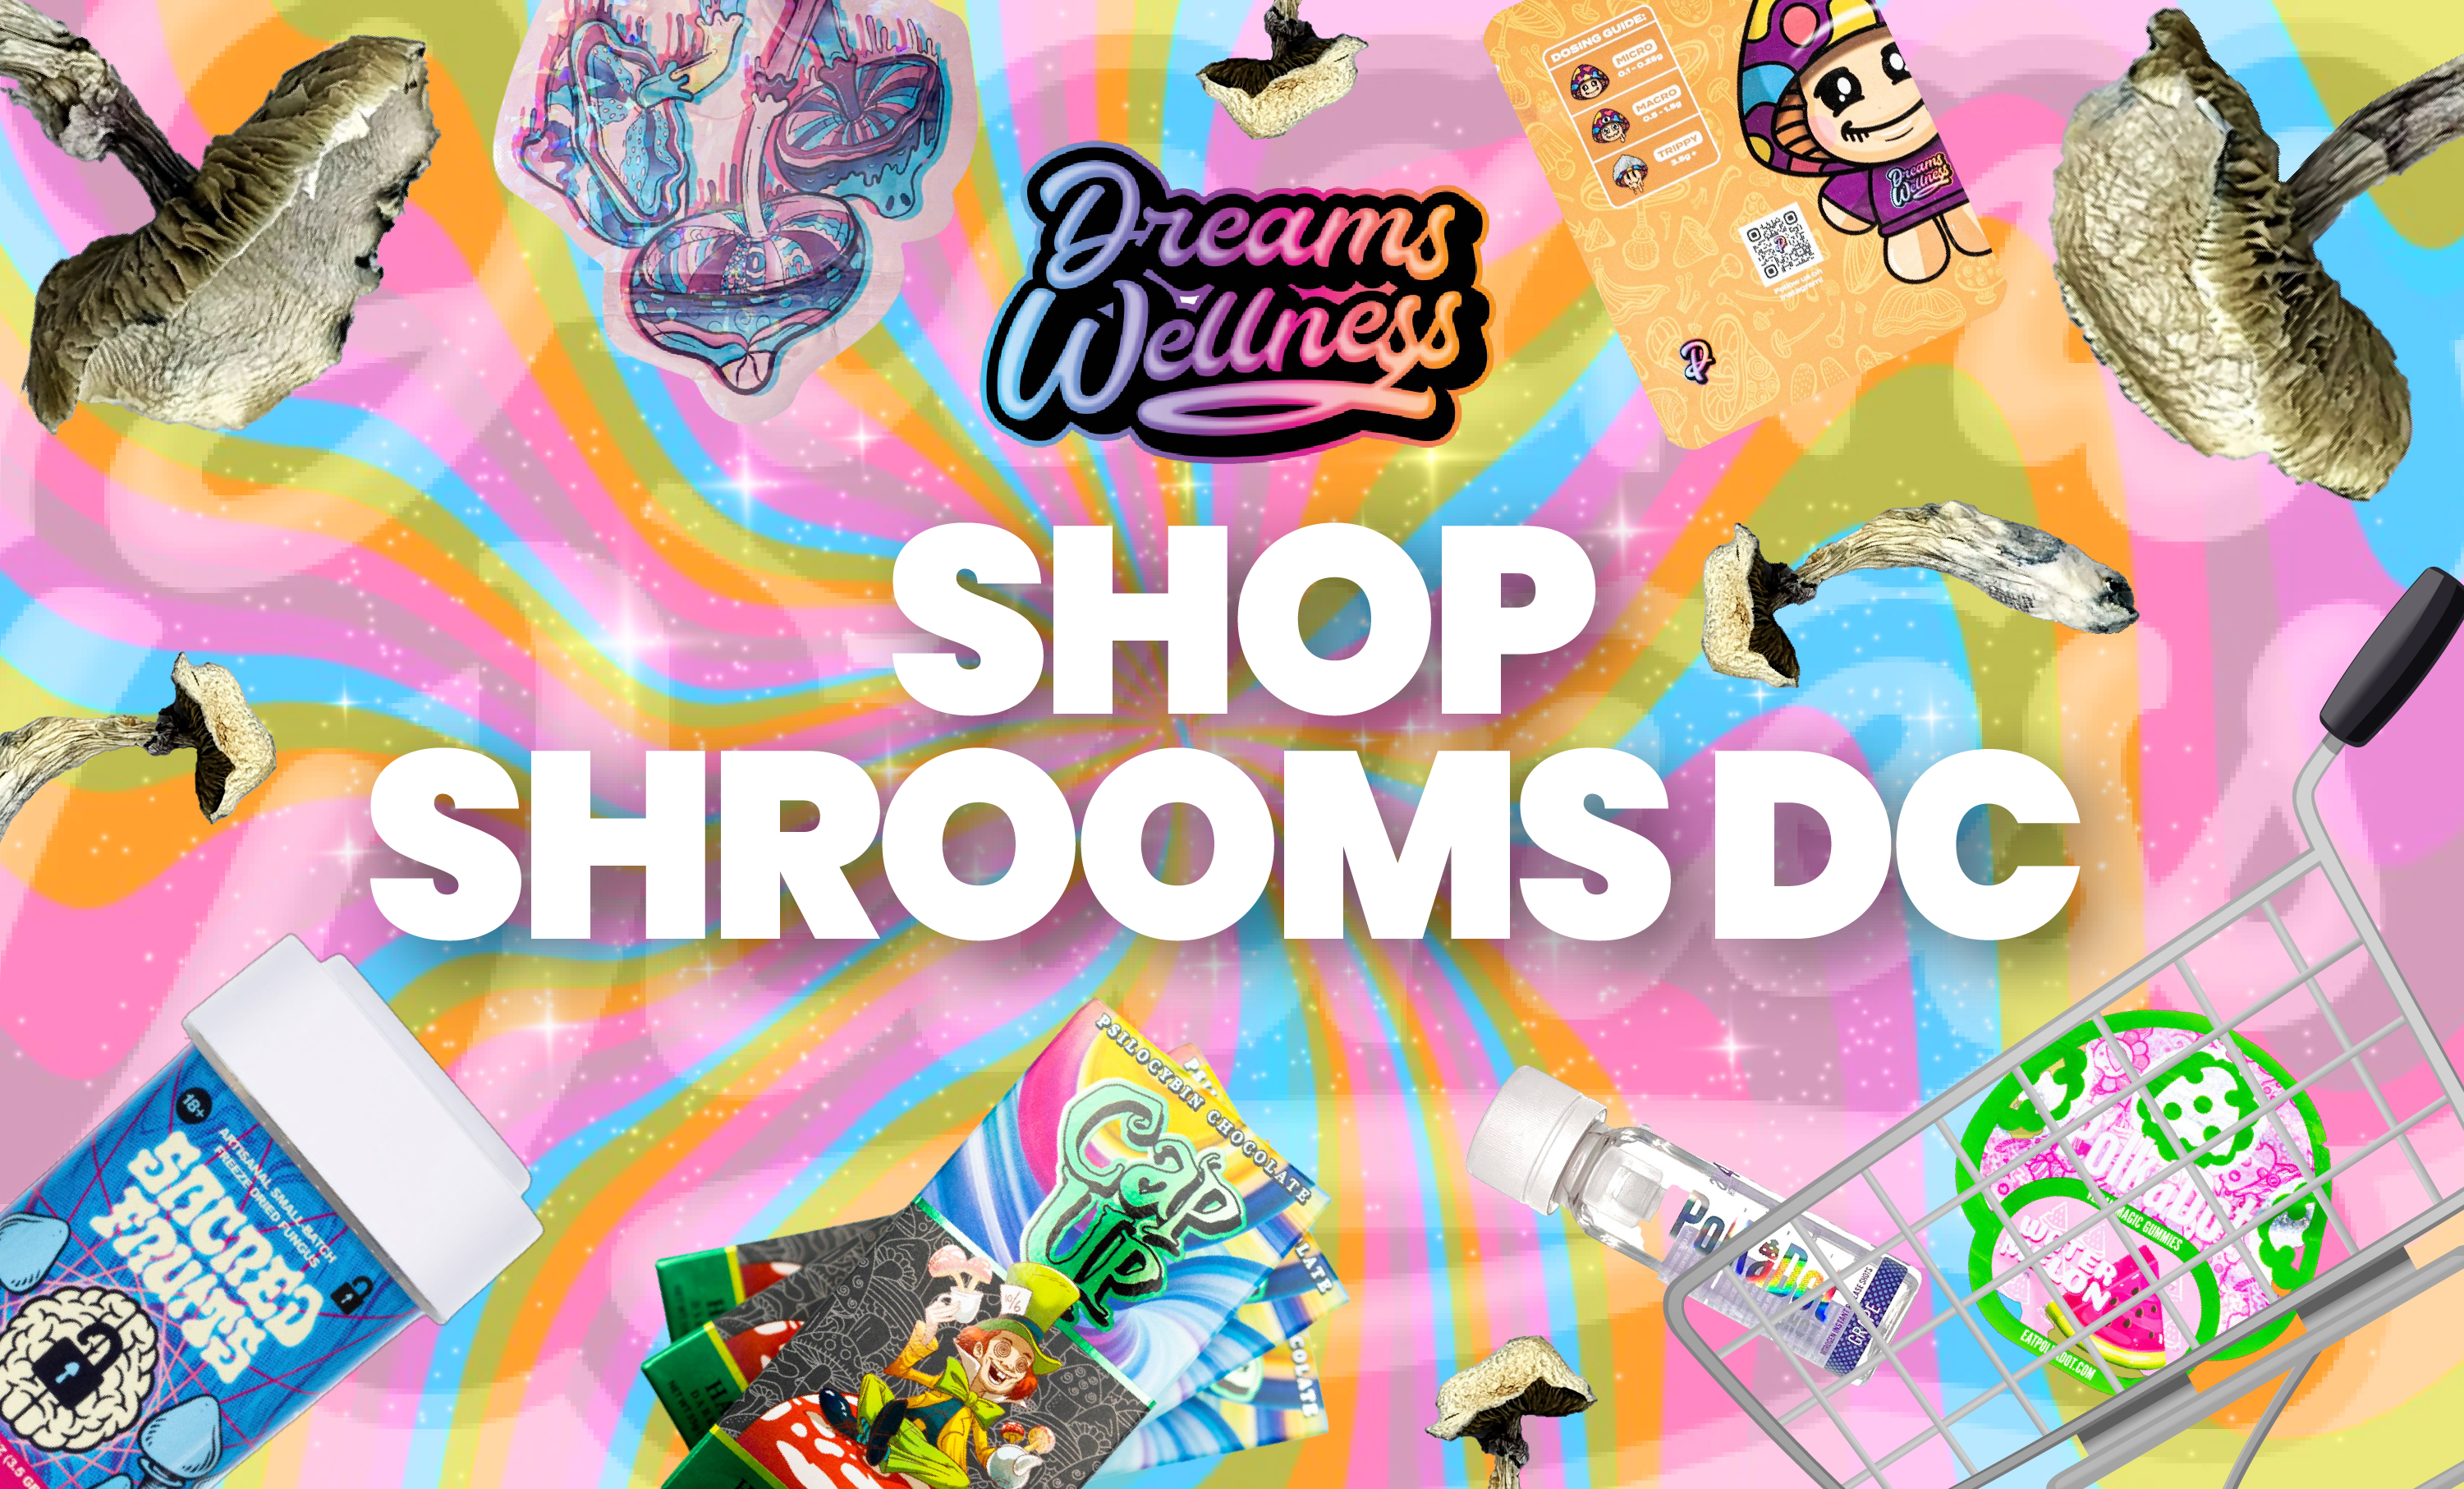 shop shrooms dc - dreams wellness